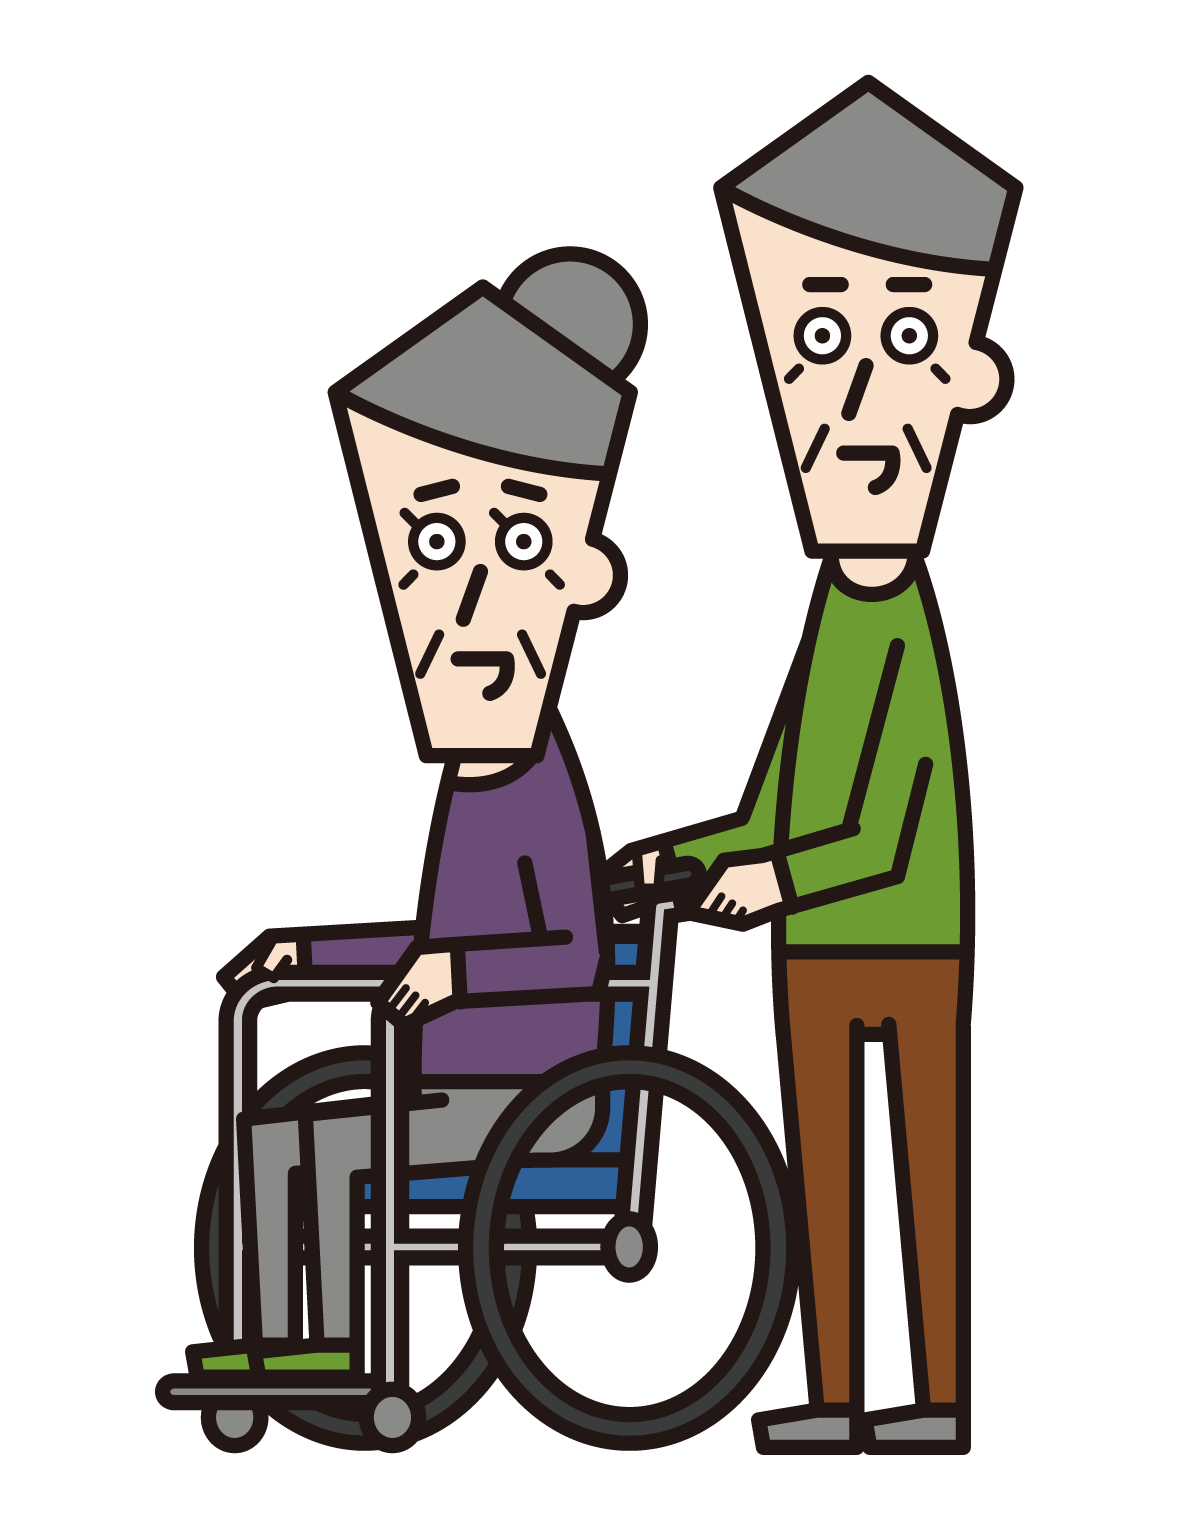 車椅子に乗っている人（おばあさん）と押す人（おじいさん）のイラスト